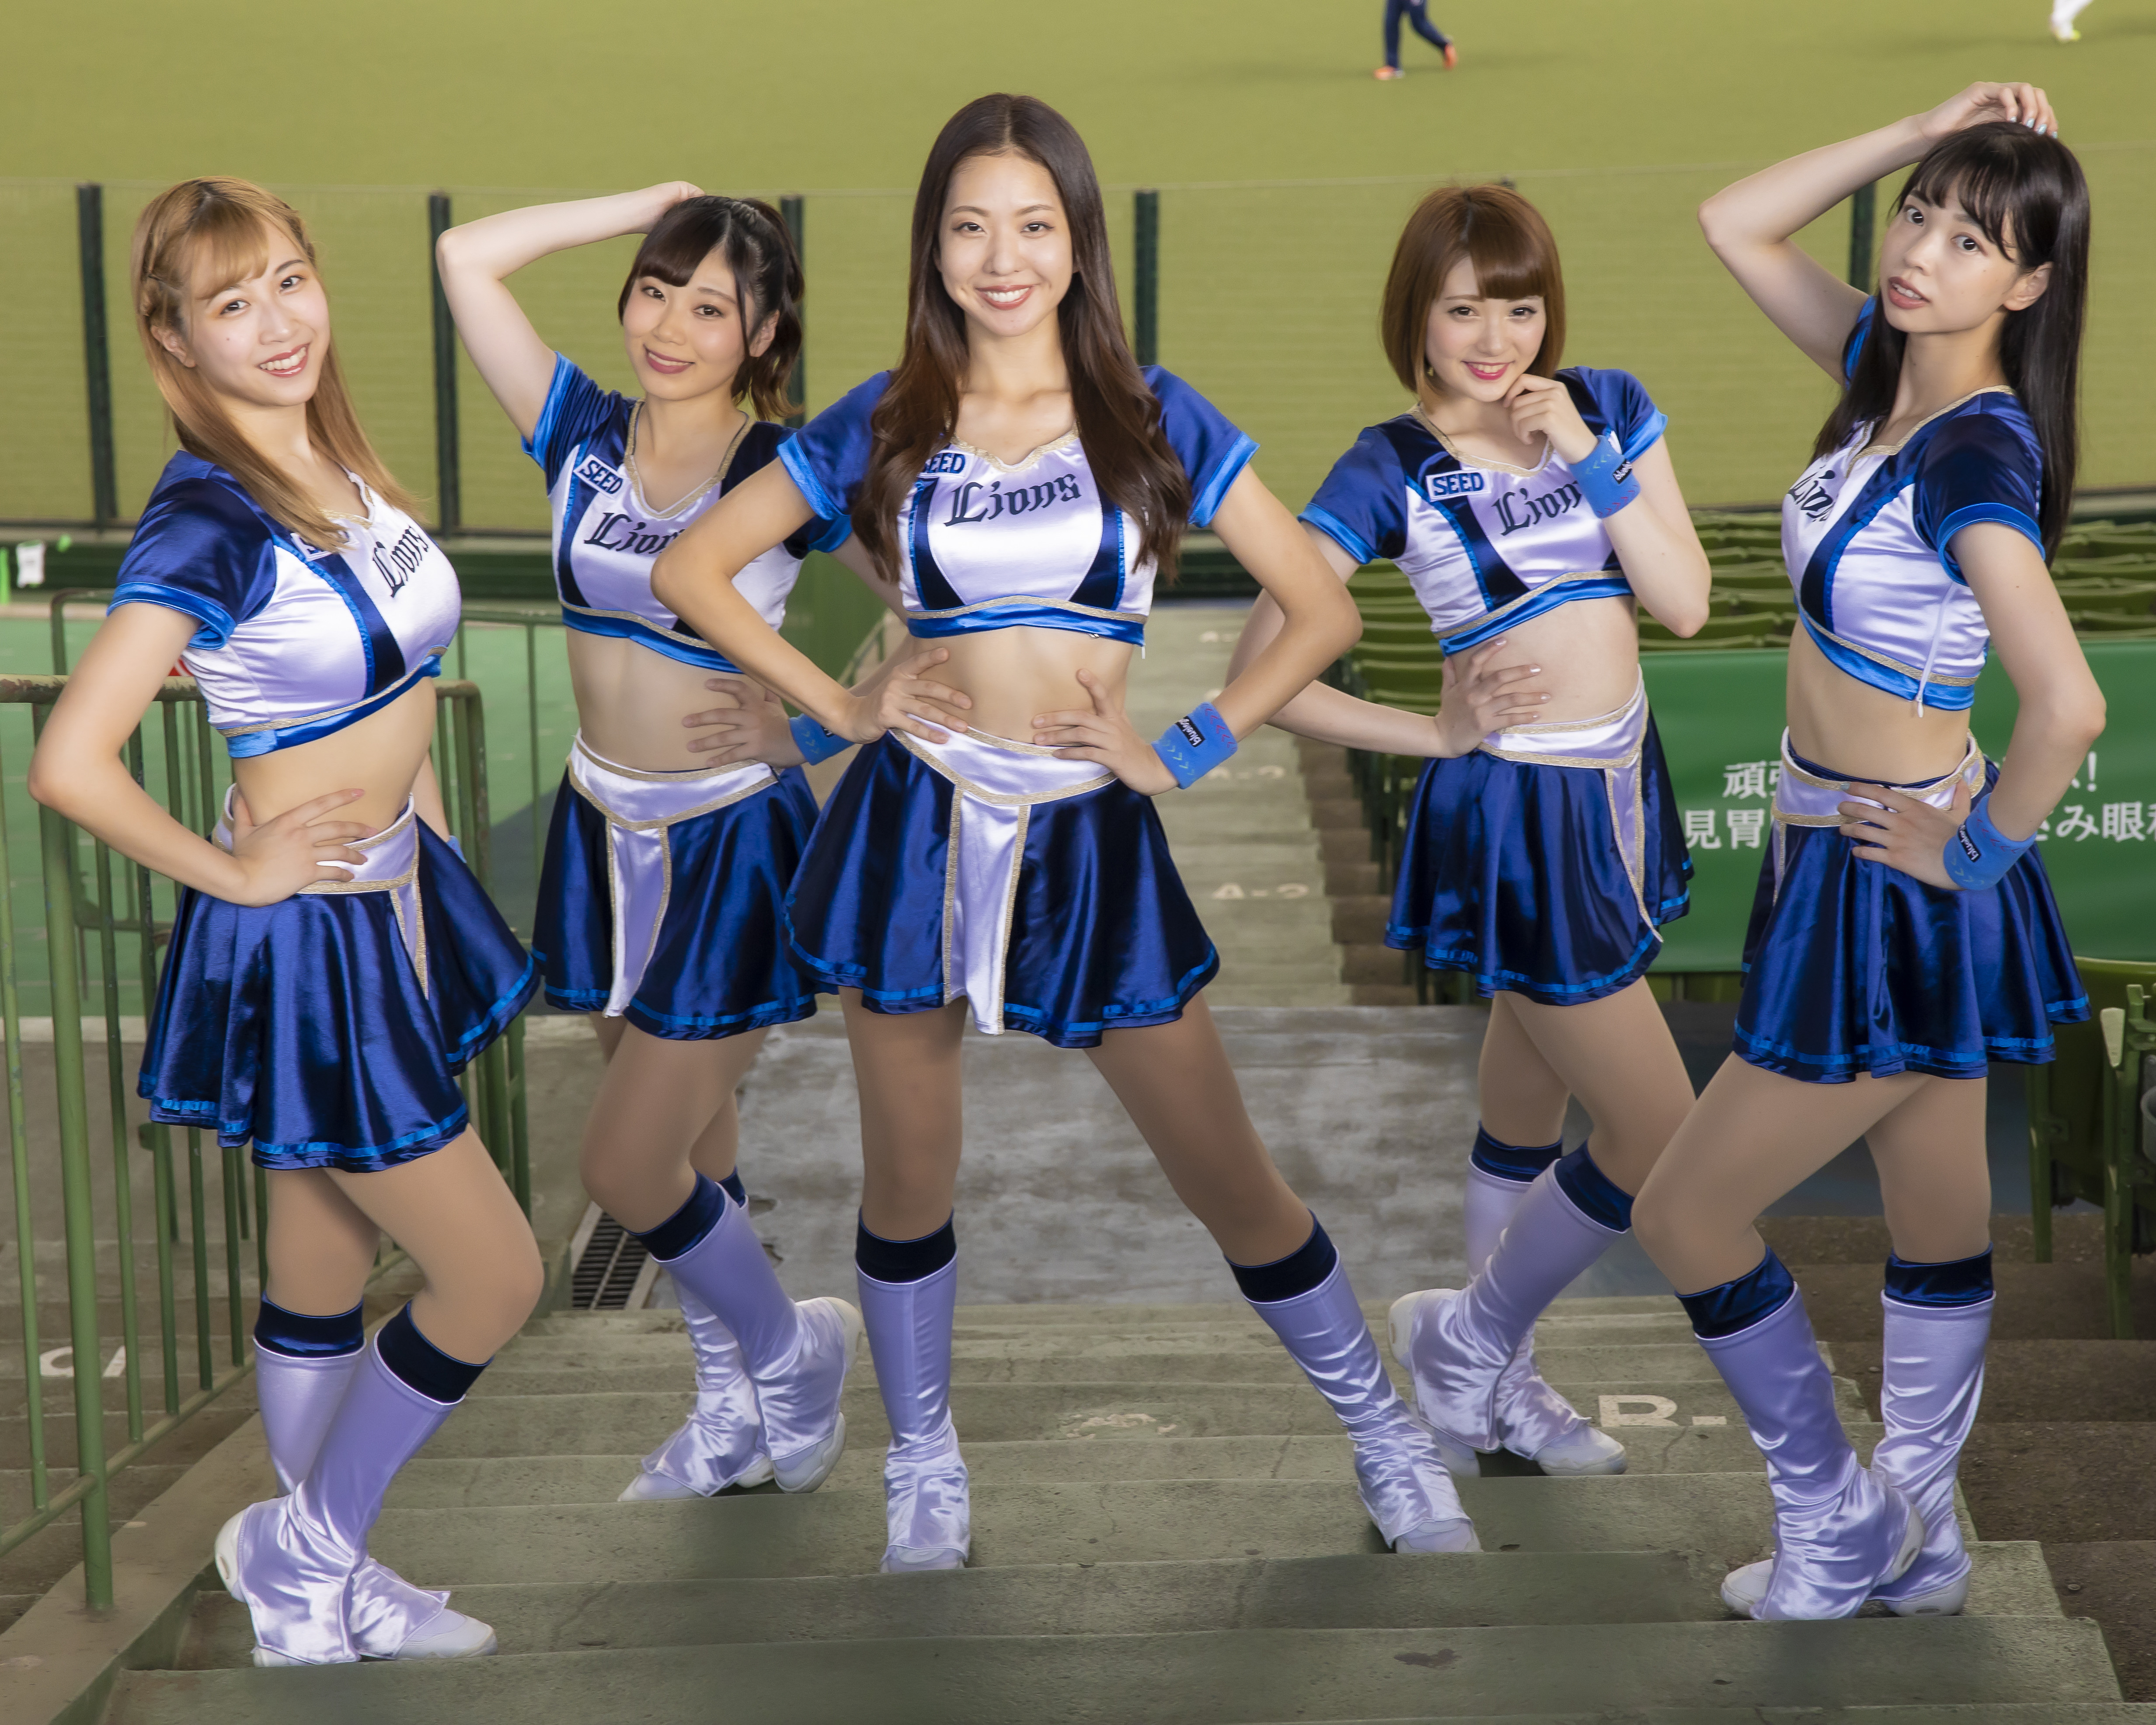 埼玉西武ランオンズ公式パフォーマー「bluelegends（ブルーレジェンズ）」メンバー。左からMisakiさん、Natsumiさん、Mihoさん、Maiさん、Amiさん球団チアリーダー連載の記事・写真一覧はコチラ＞＞